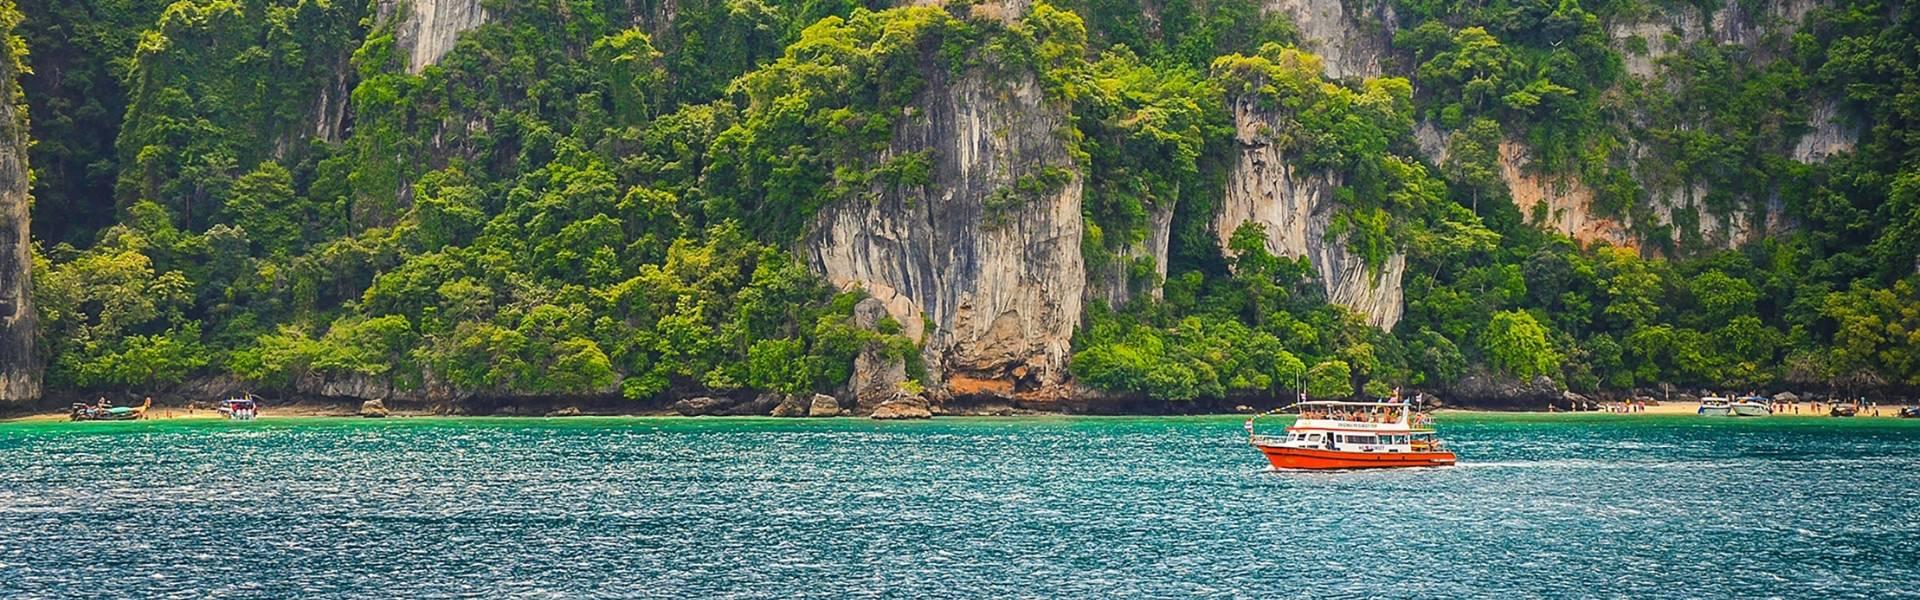 Guide de voyage de Phuket | Voyage en Thailande avec Asiatica Travel